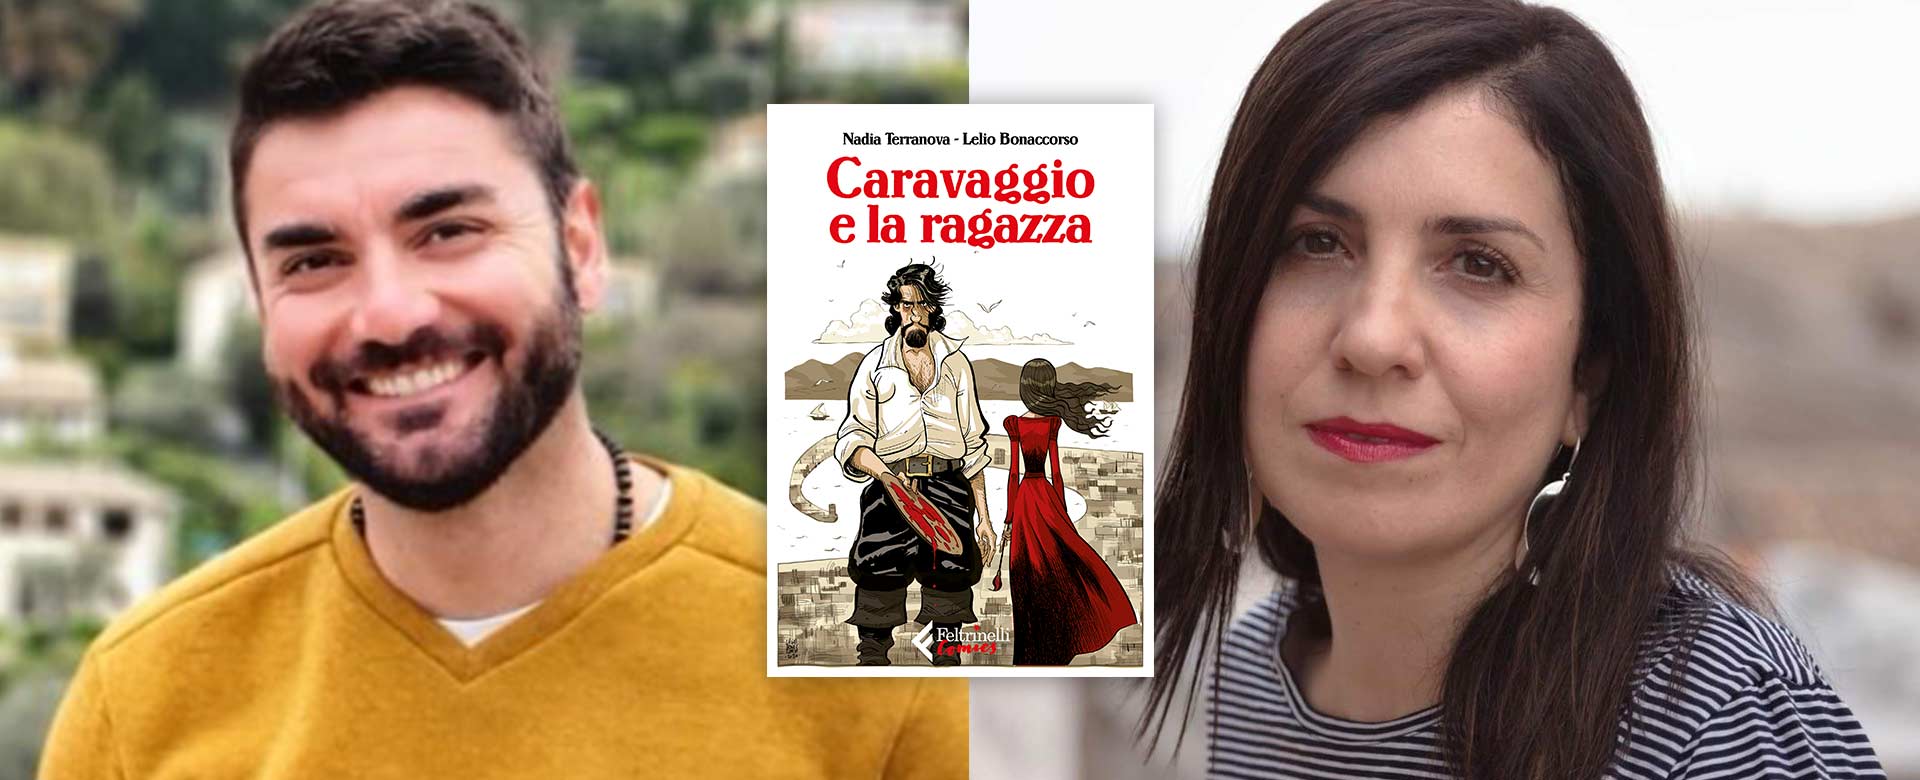 A sinistra Lelio Bonaccorso, a destra Nadia Terranova, autori del libro, la cover al centro, Caravaggio e la ragazza